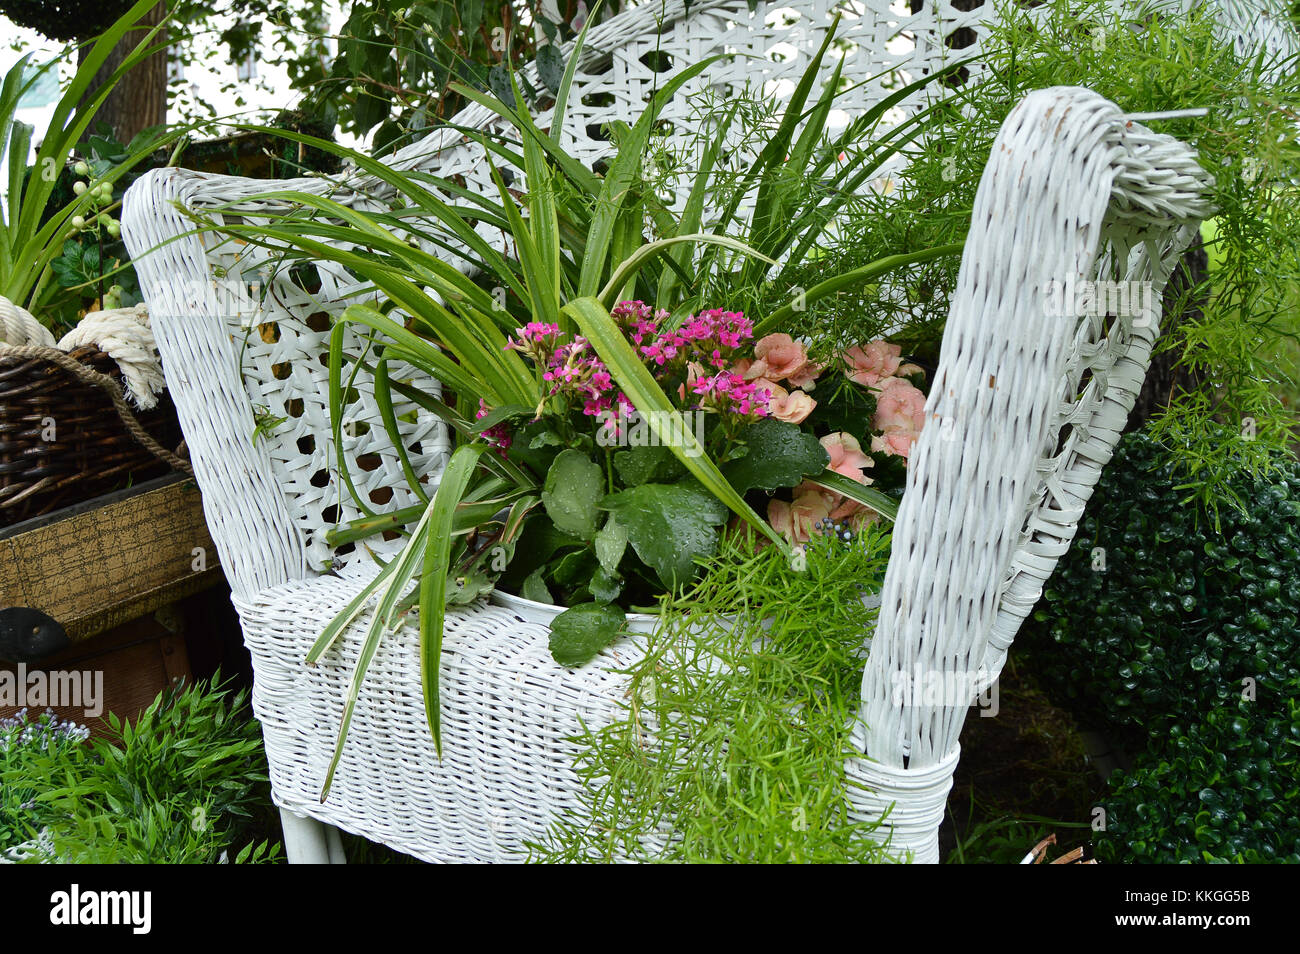 Weiße Korbsessel im Garten, Pflanzen in Töpfen stehen auf dem Stuhl.  schönes Design Stockfotografie - Alamy